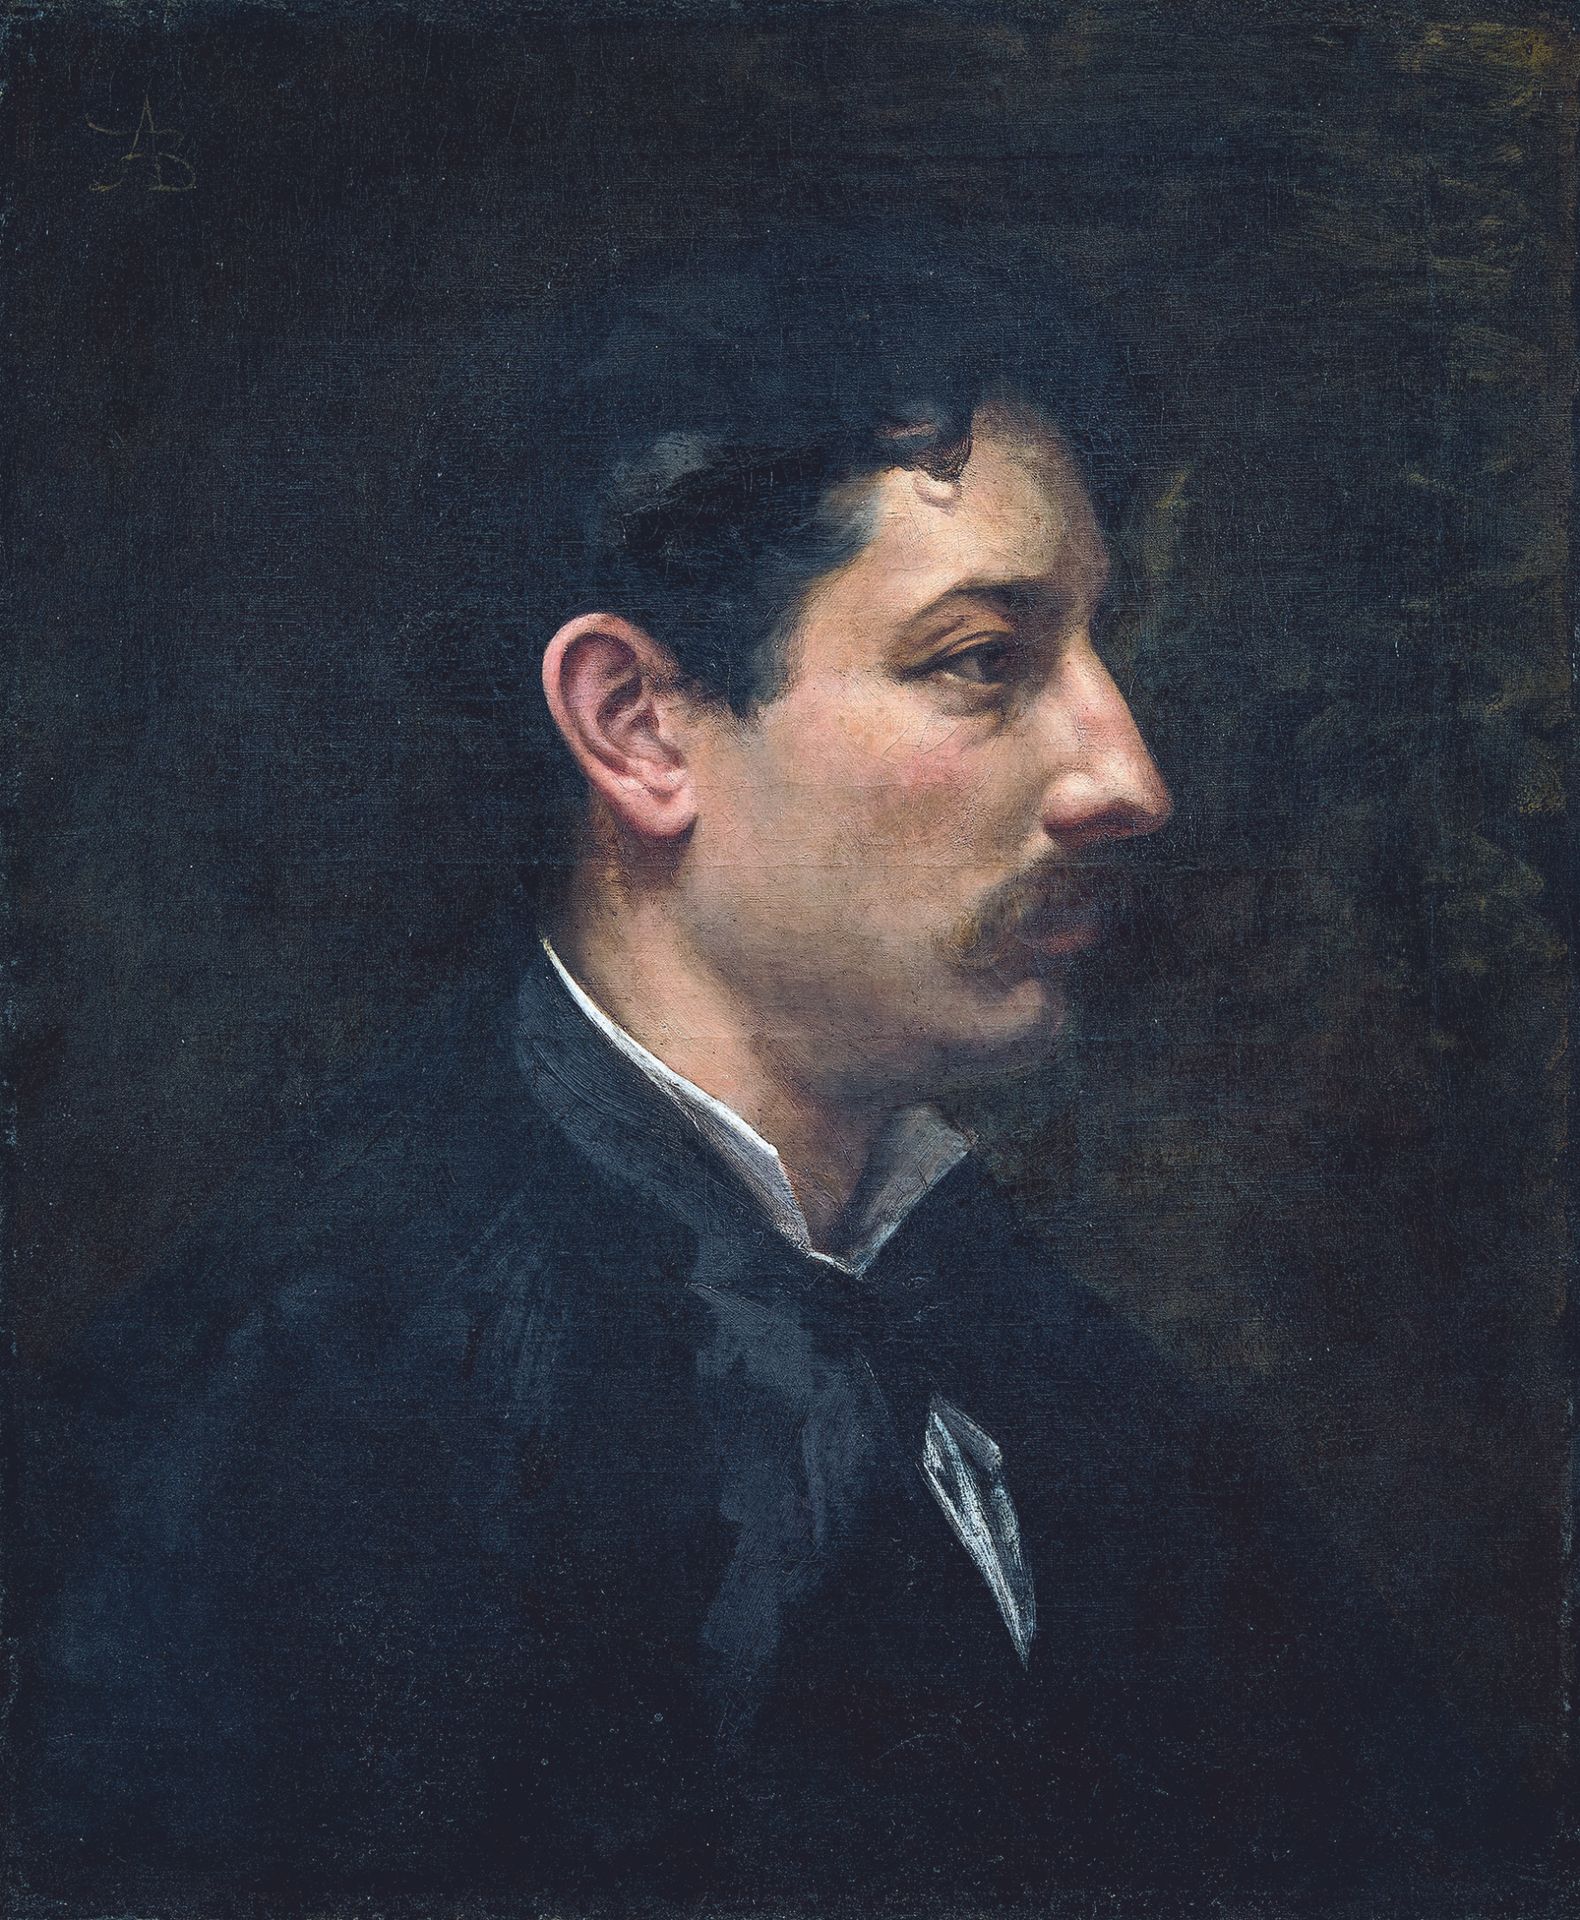 Null 阿尔伯特-贝斯纳(1849-1934)
一个年轻男子的侧面画像
布面油画，左上方有字。
55.5 x 46.5厘米